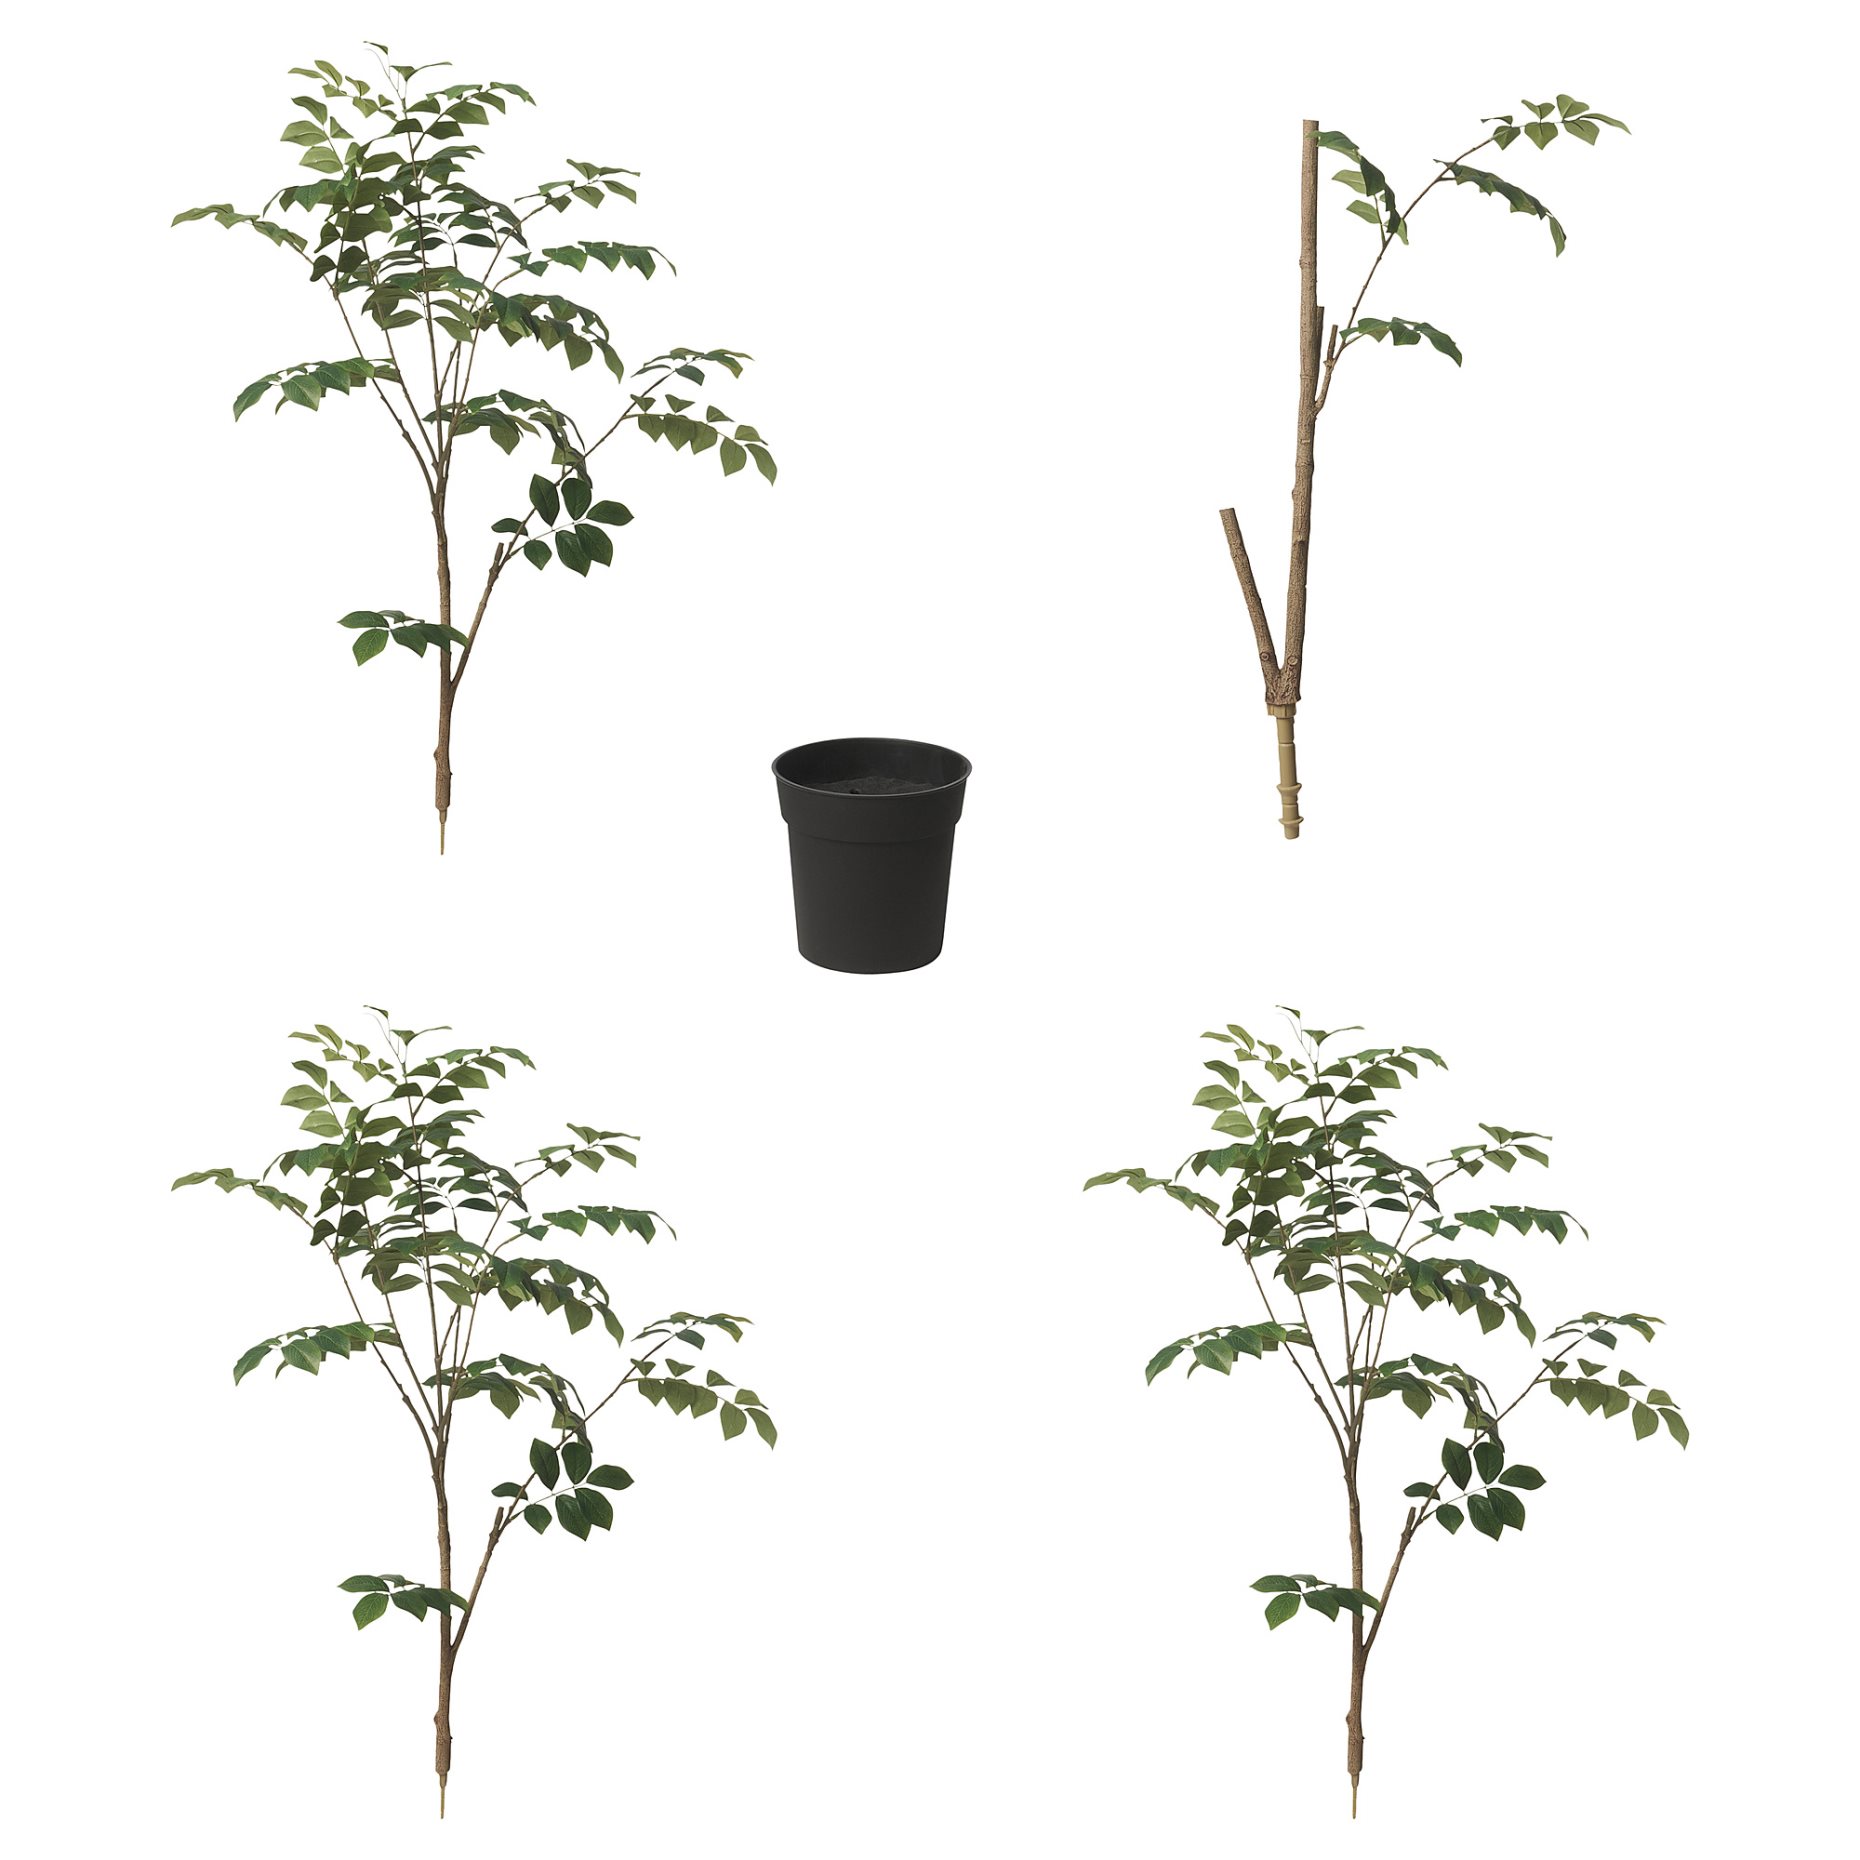 FEJKA, τεχνητό φυτό σε γλάστρα/εσωτερικού/εξωτερικού χώρου/κόκκινο Σανταλόξυλο, 19 cm, 005.716.98